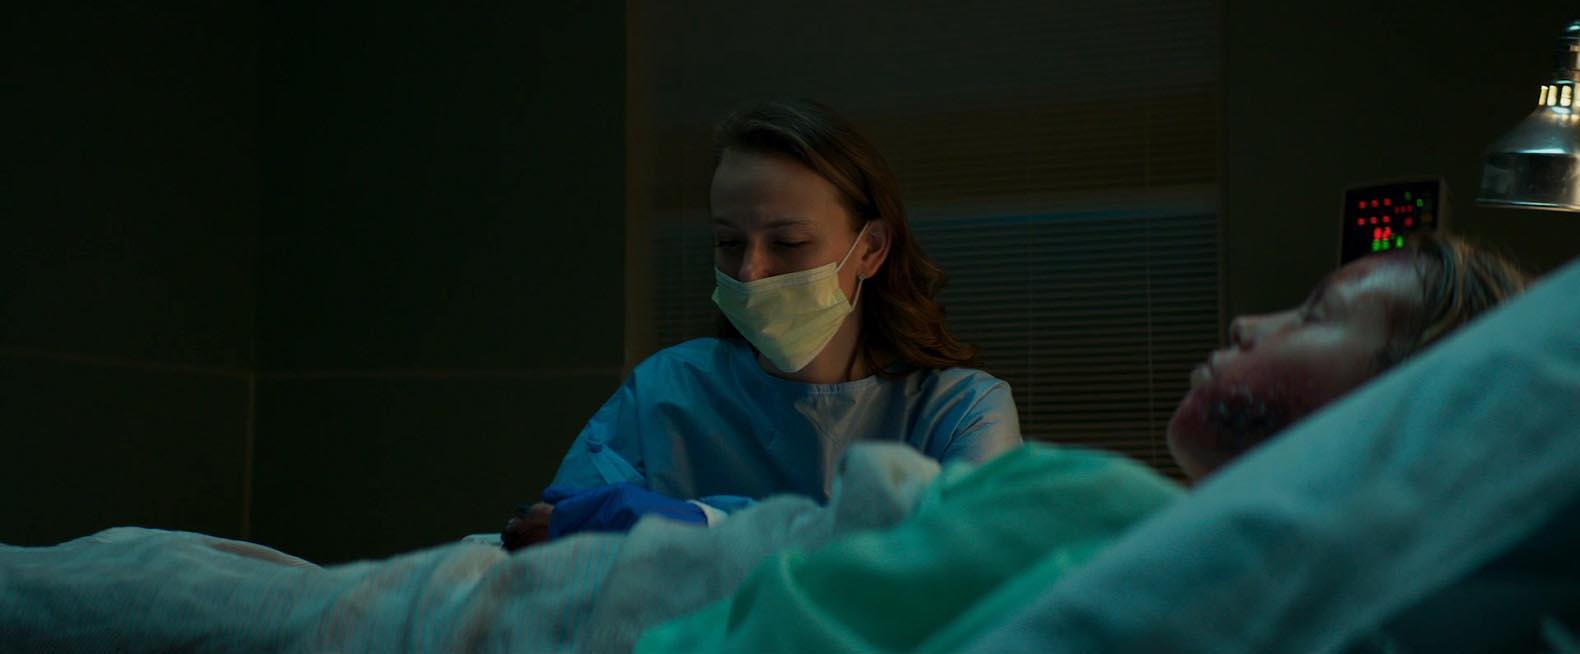 اندی ماتیچاک در نقش لورا بر بالین فرزند بیمارش در فیلم Son